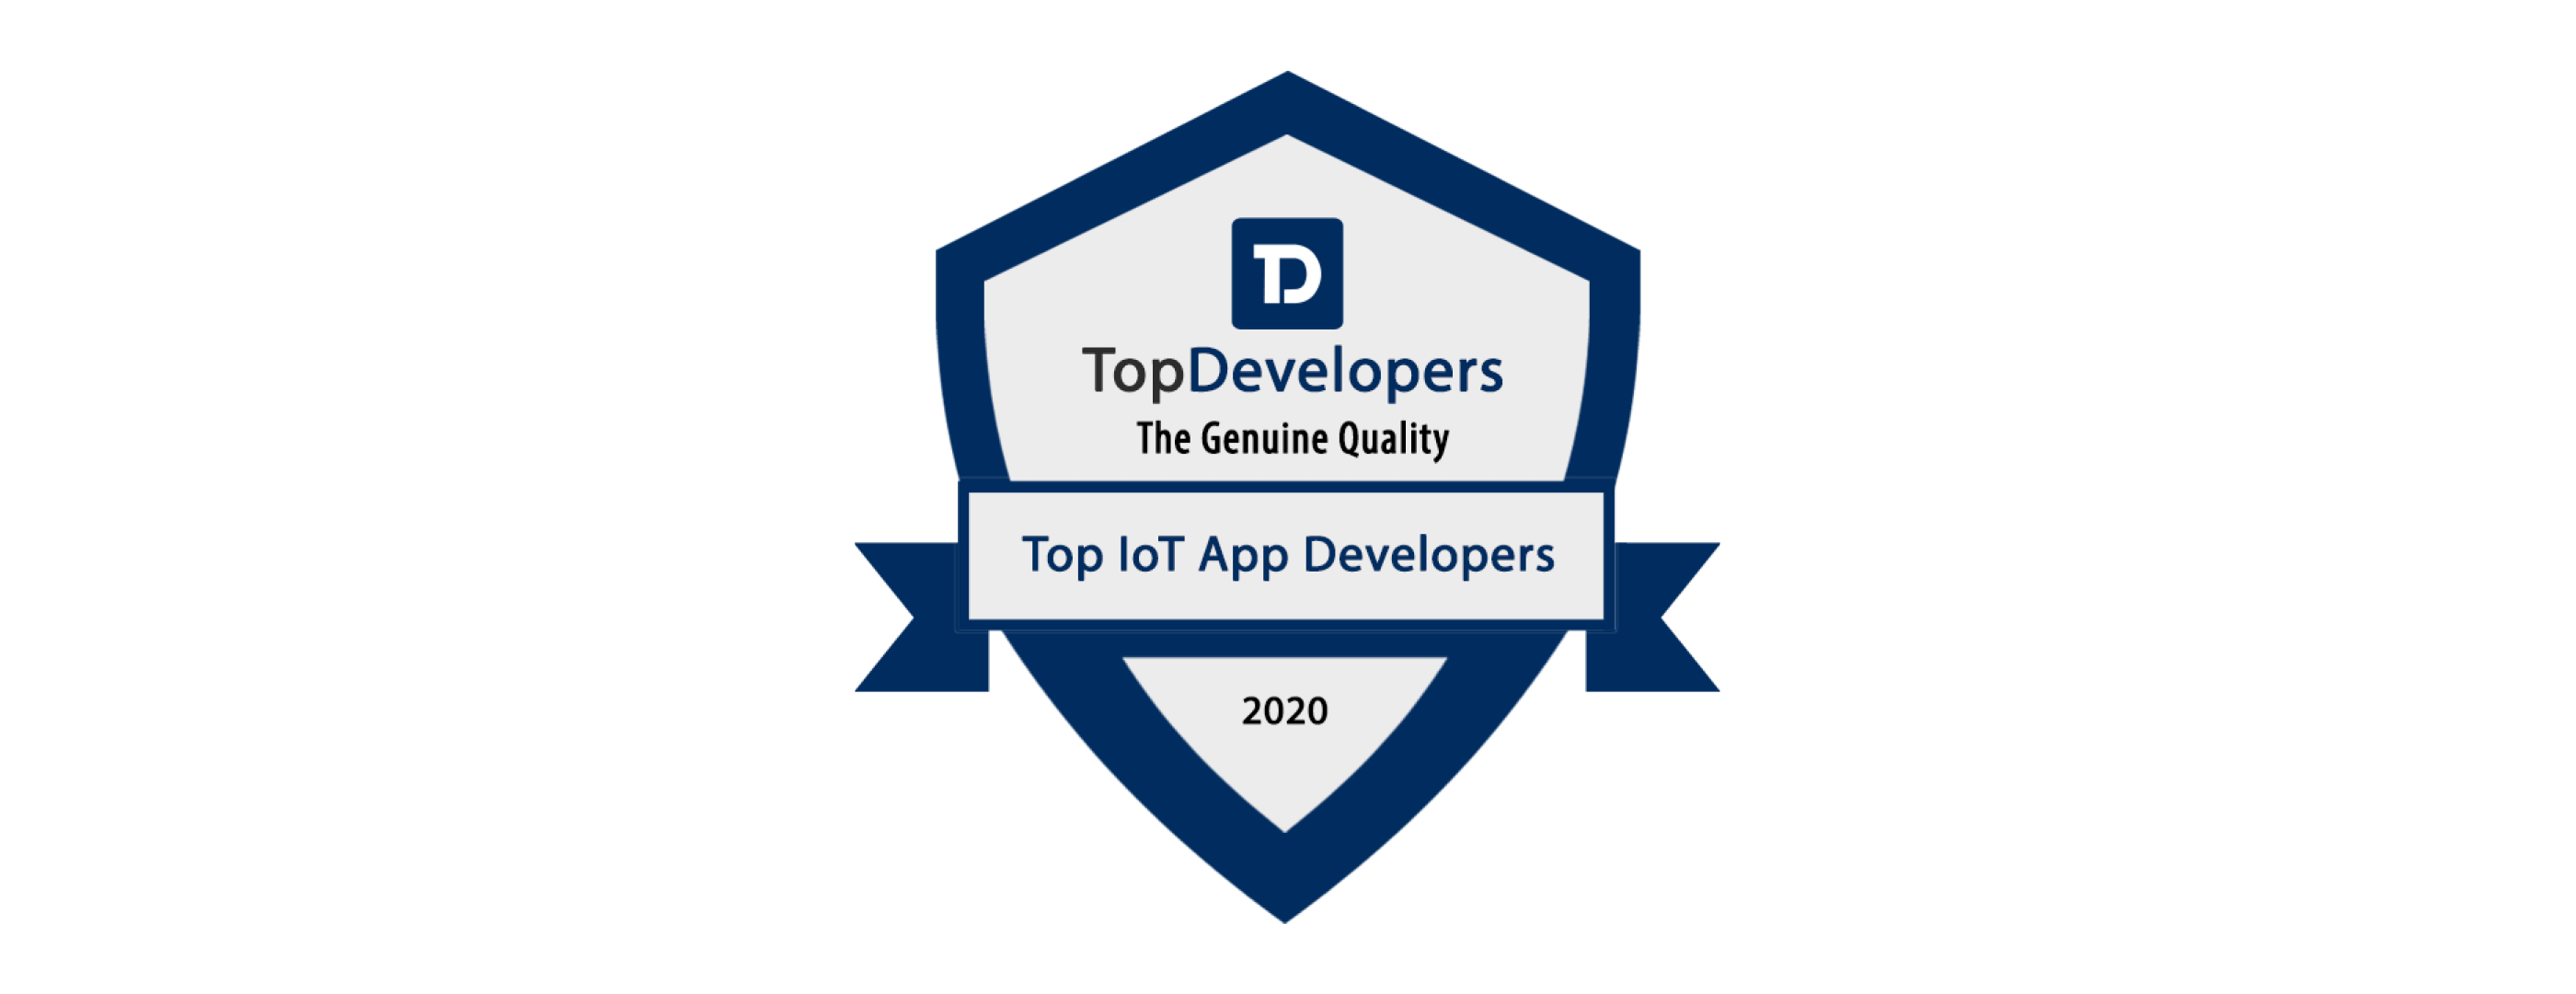 Top IoT App Development 2020